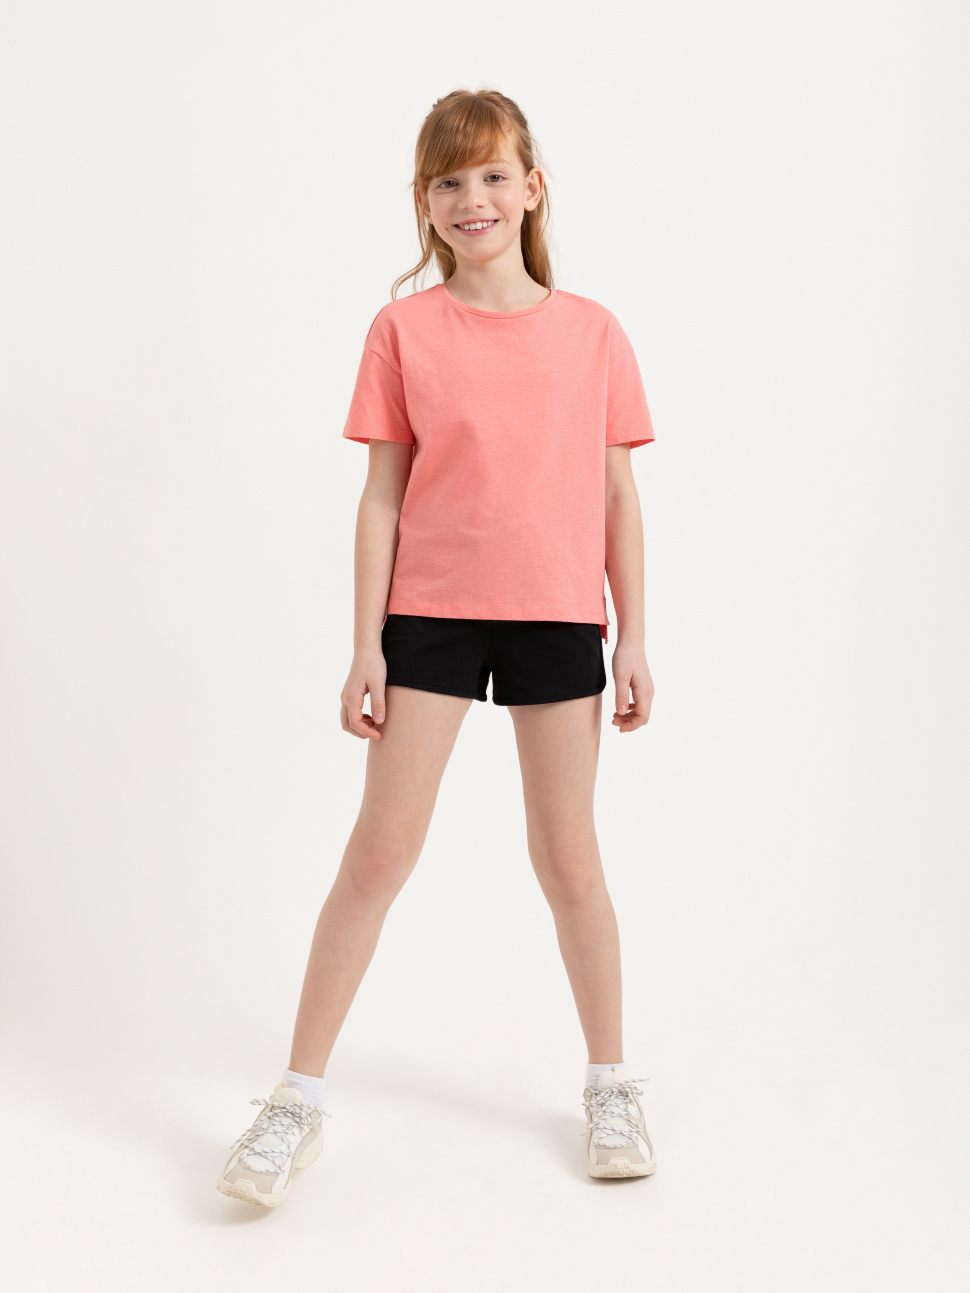 Джинсовые шорты для девочек – купить в интернет-магазине sela